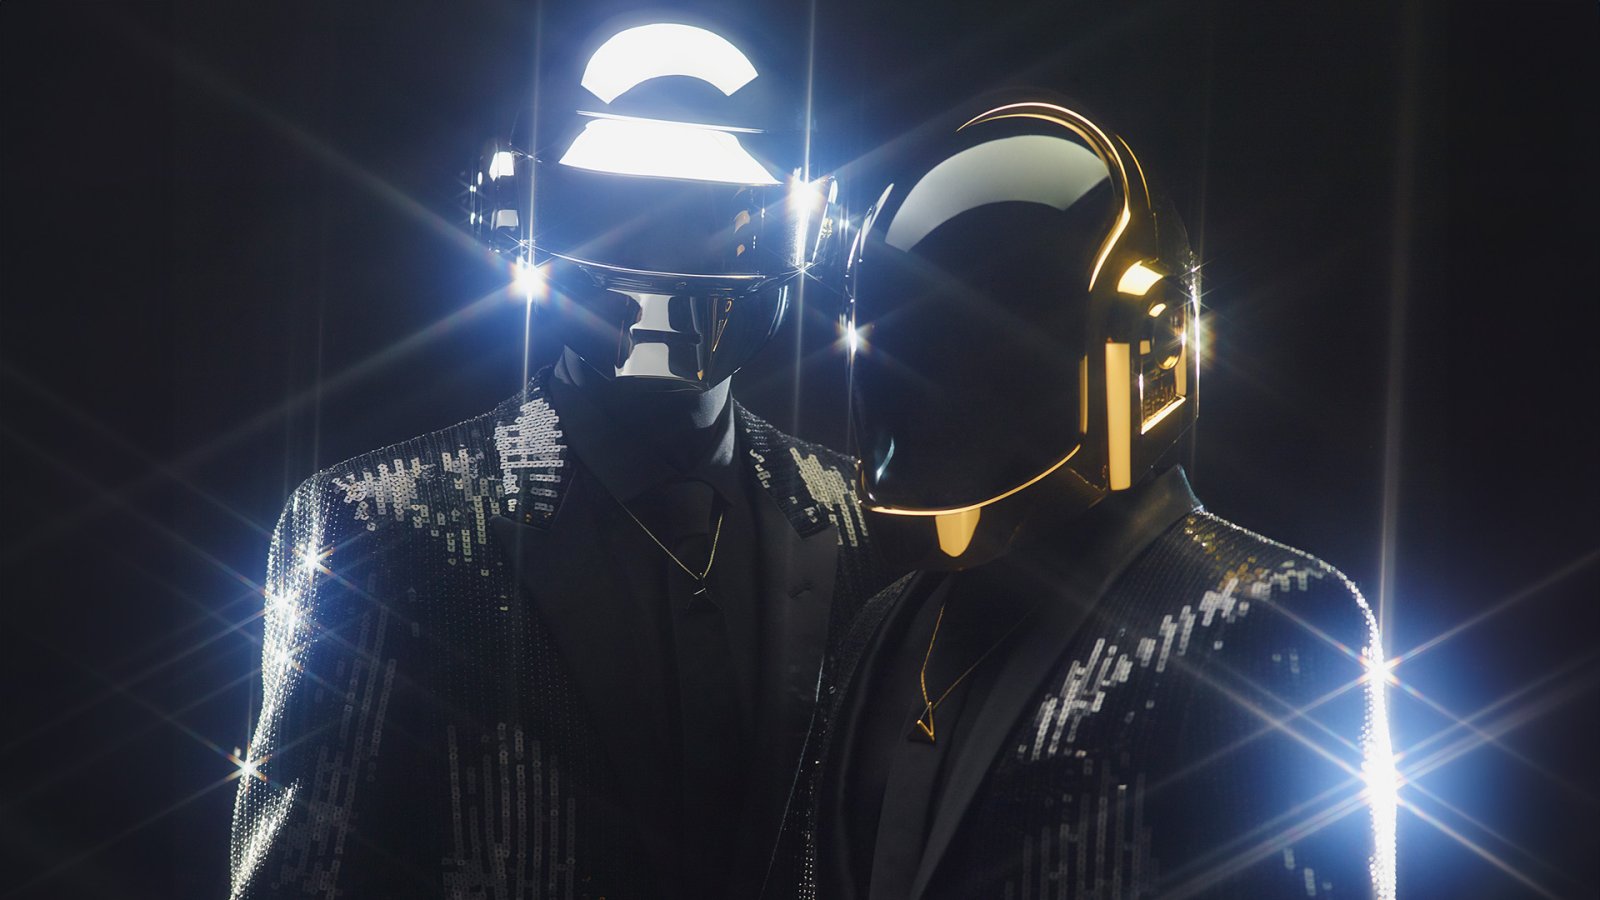 ลุ้นเปิดกรุ! Daft Punk อาจกำลังนำเอาอัลบั้มที่ซุ่มทำไว้ตั้งแต่ปี 2018 ออกมาปล่อยเป็นครั้งแรก